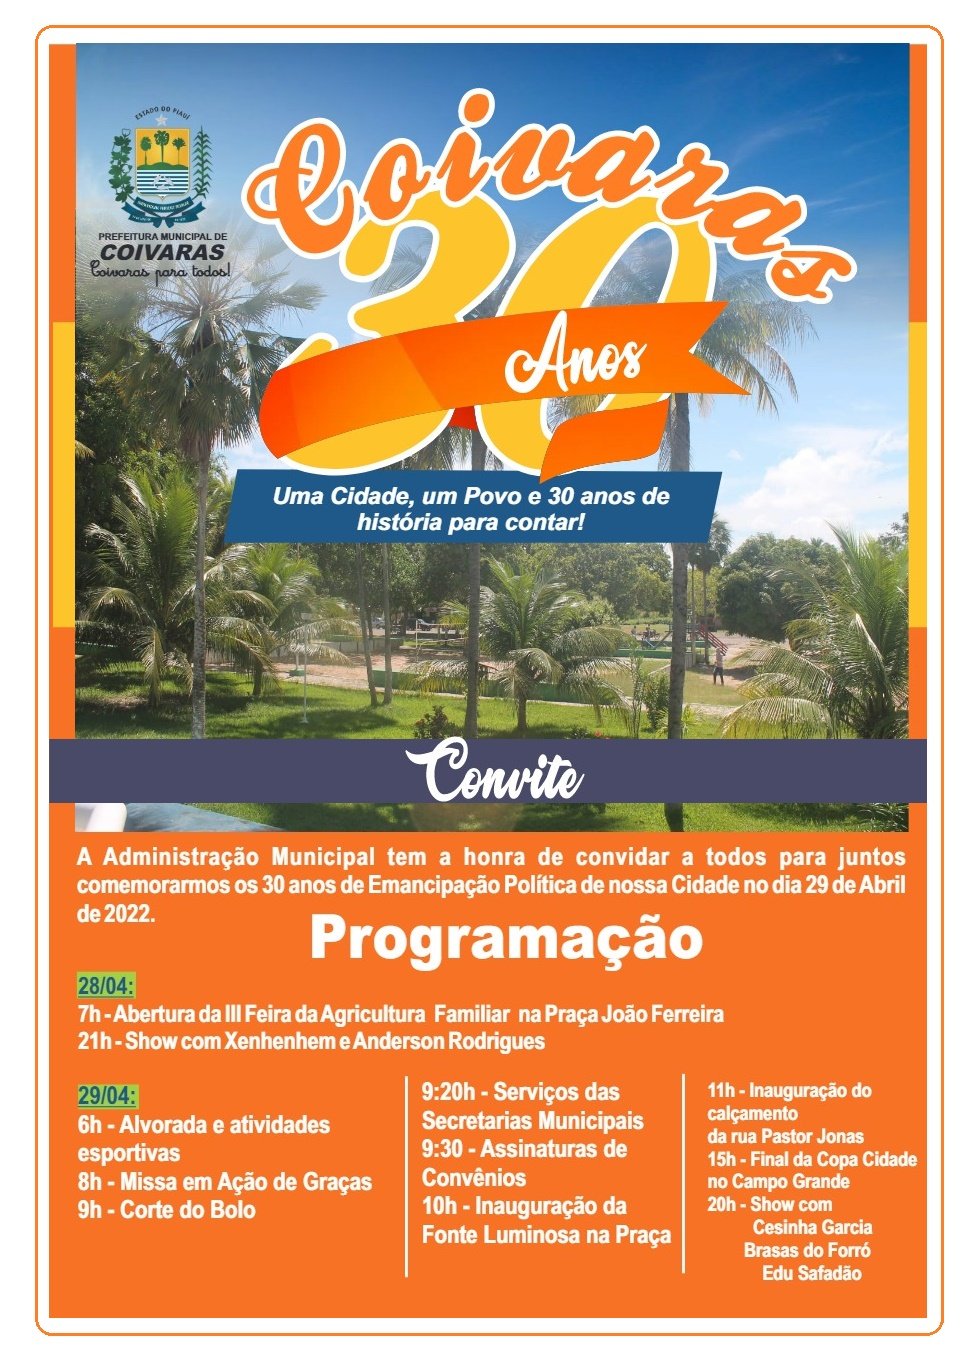 30 ANOS DE COIVARAS: Confira a programação de aniversário da cidade - Imagem 3